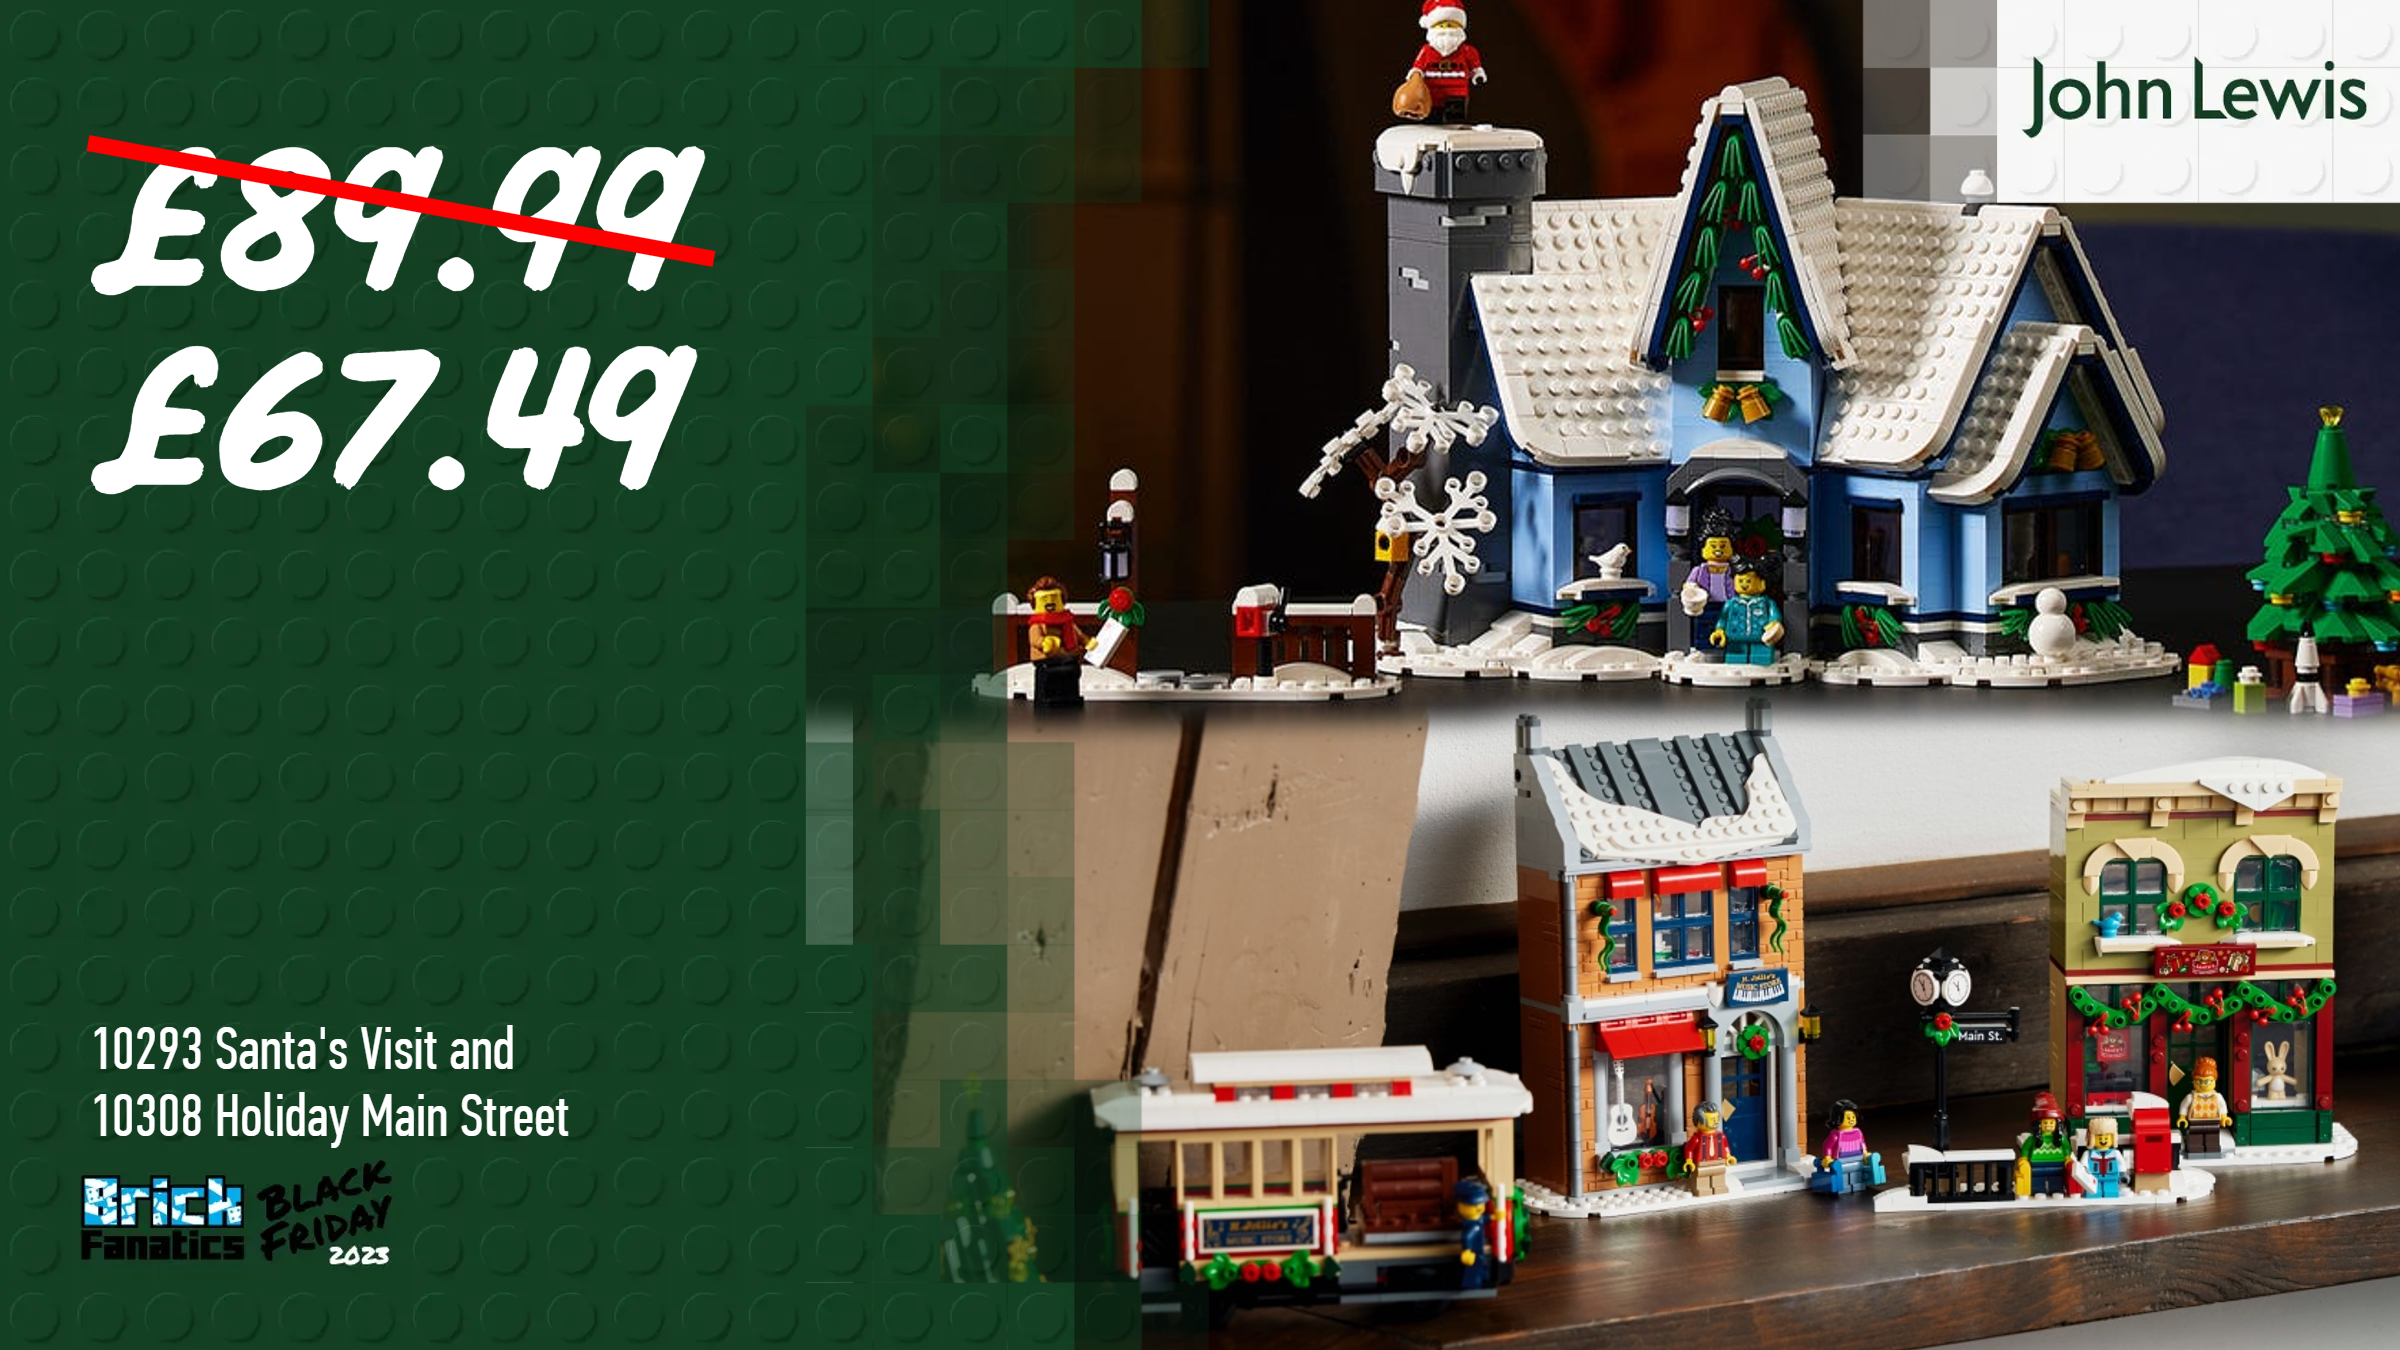 Leur village de Noël en Lego fait sensation dans l'épicerie familiale - Le  Parisien